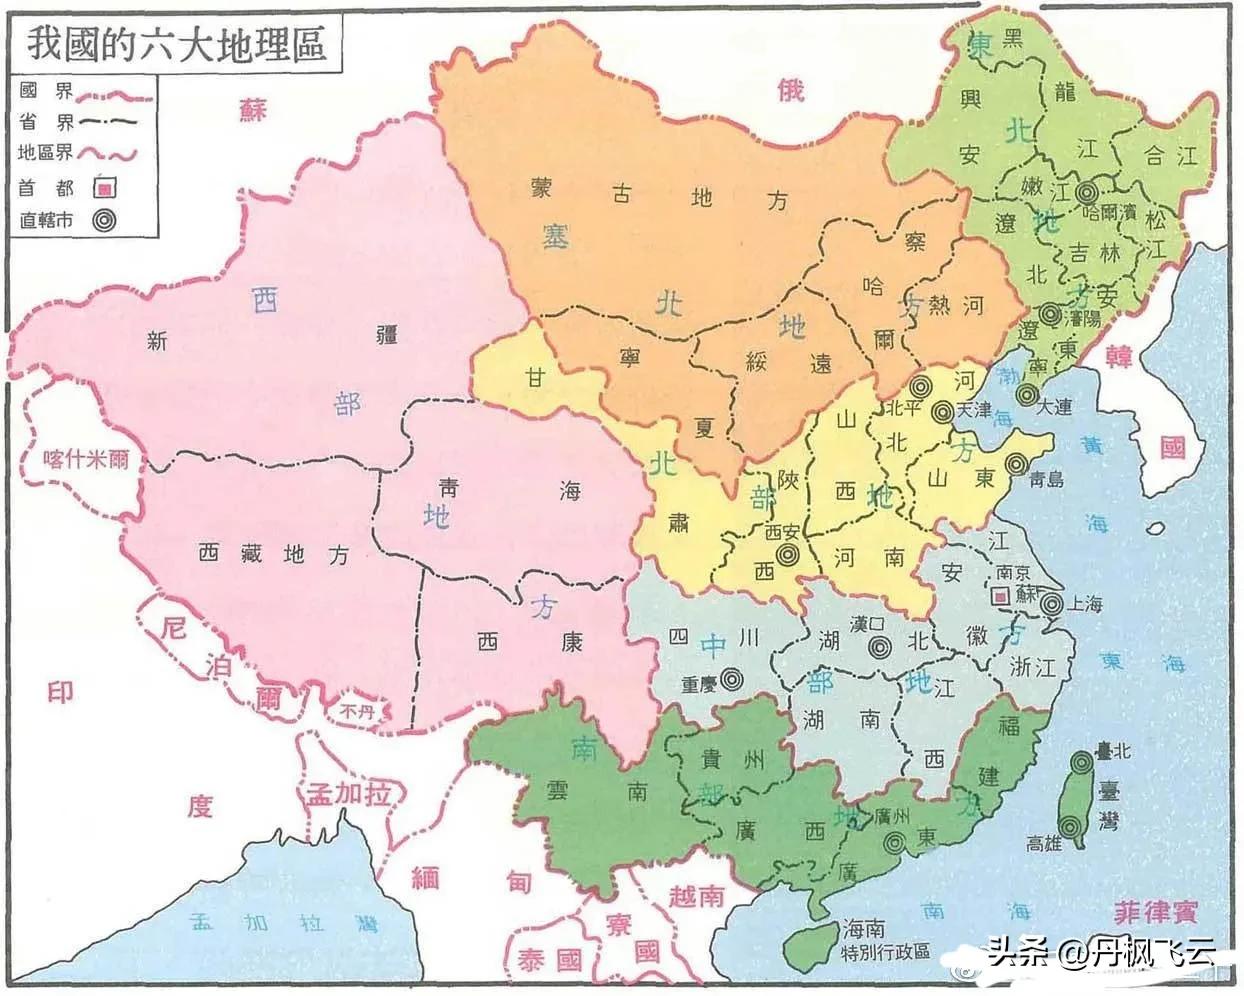 华北是指哪几个省 华北5省是哪几个省